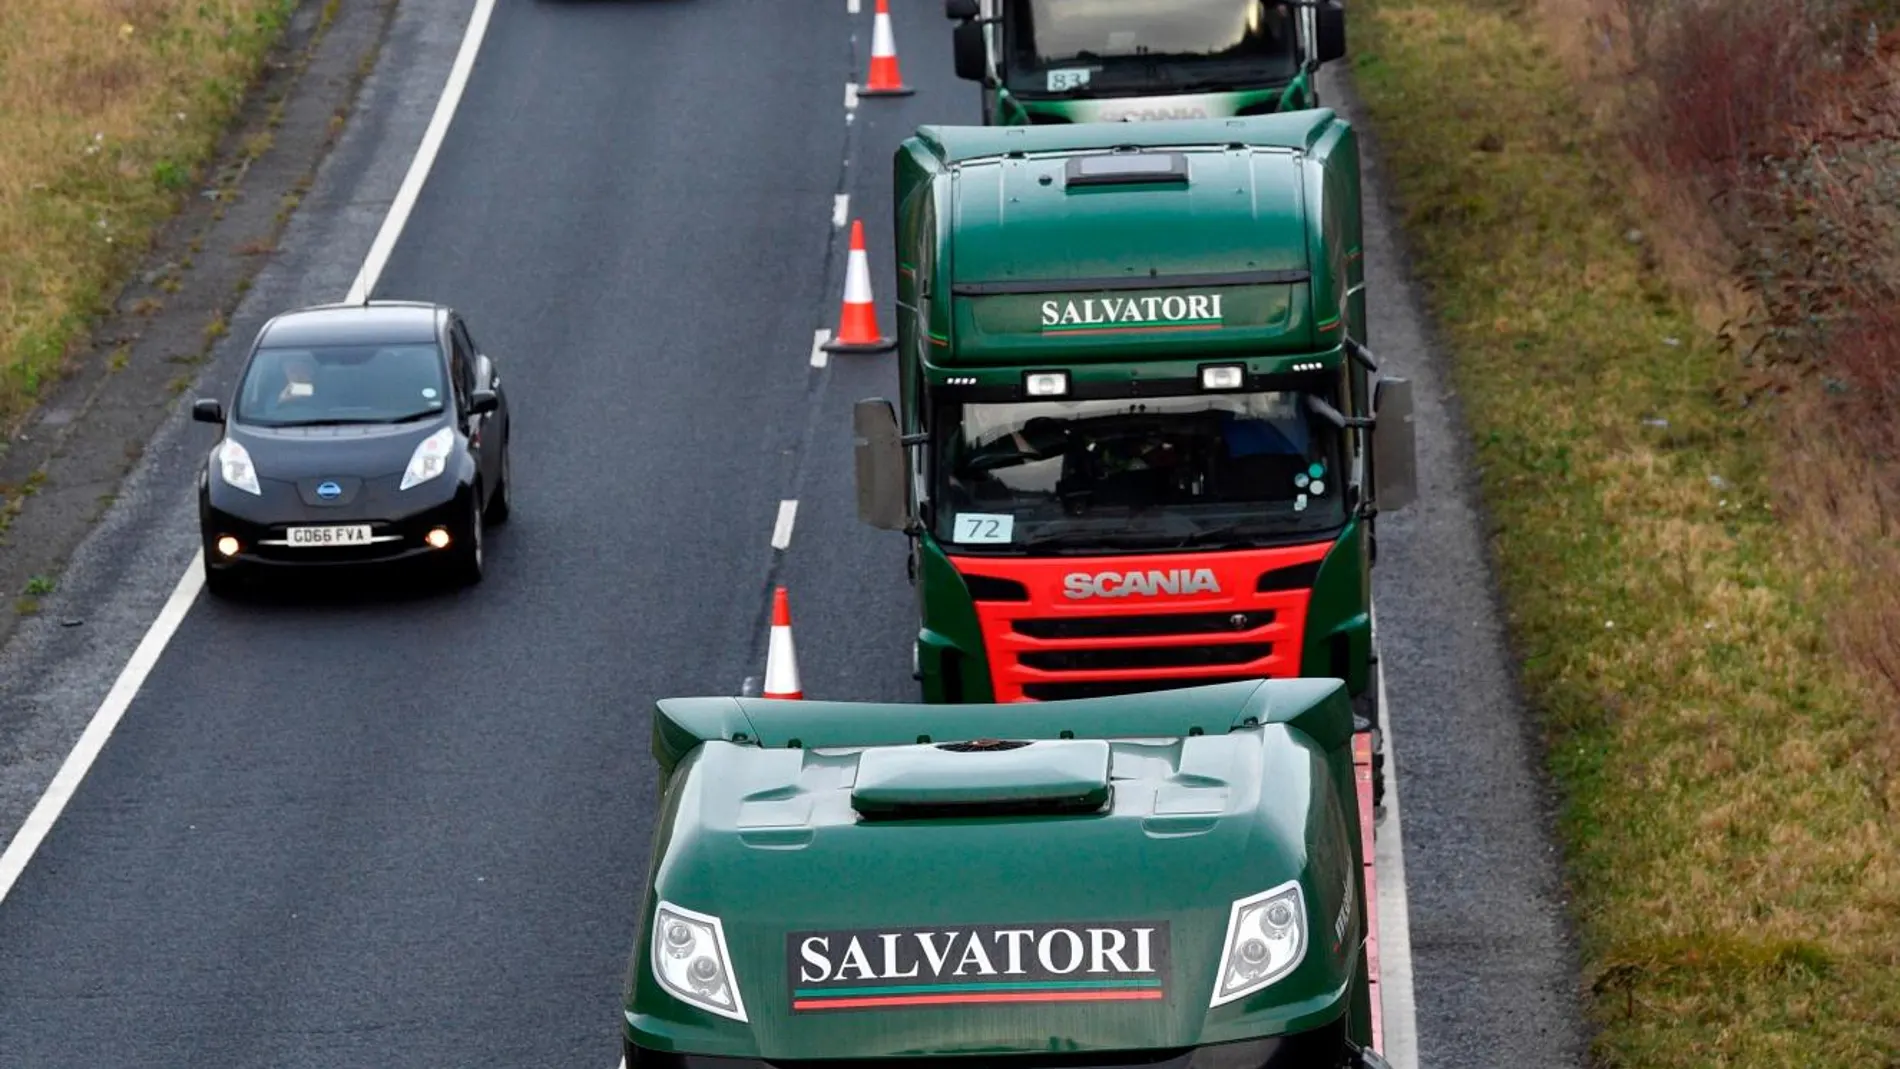 Decenas de camiones participaron ayer en una prueba organizada por el Gobierno británico en Kent (sureste de Inglaterra) para prevenir la congestión viaria por los mayores controles fronterizos en el caso de la salida del Reino Unido de la UE sin acuerdo